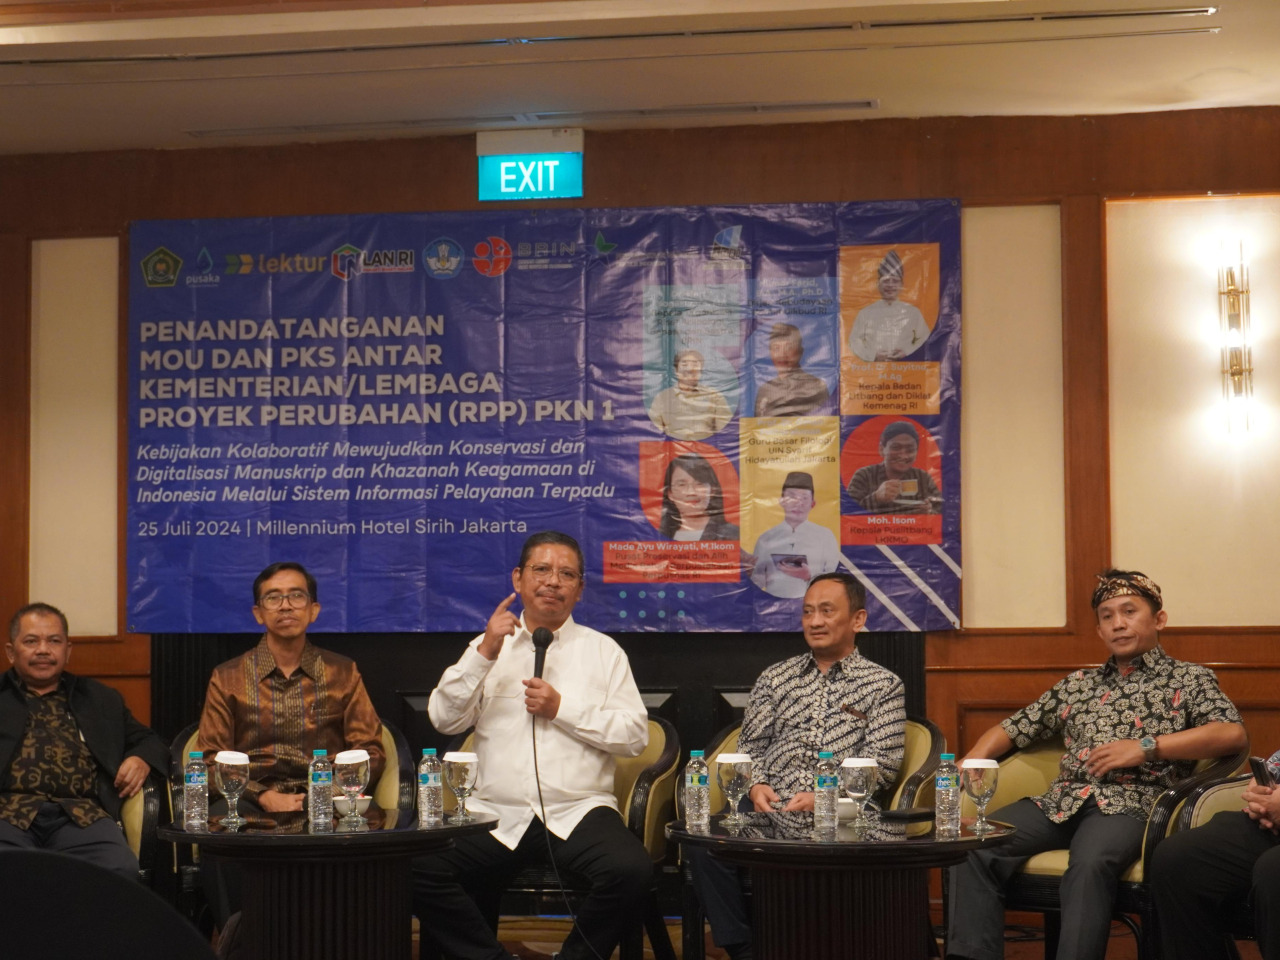 Merawat Otoritas Sumber Naskah Keagamaan, Balitbang Diklat Rangkul K/L Kompilasi Manuskrip 